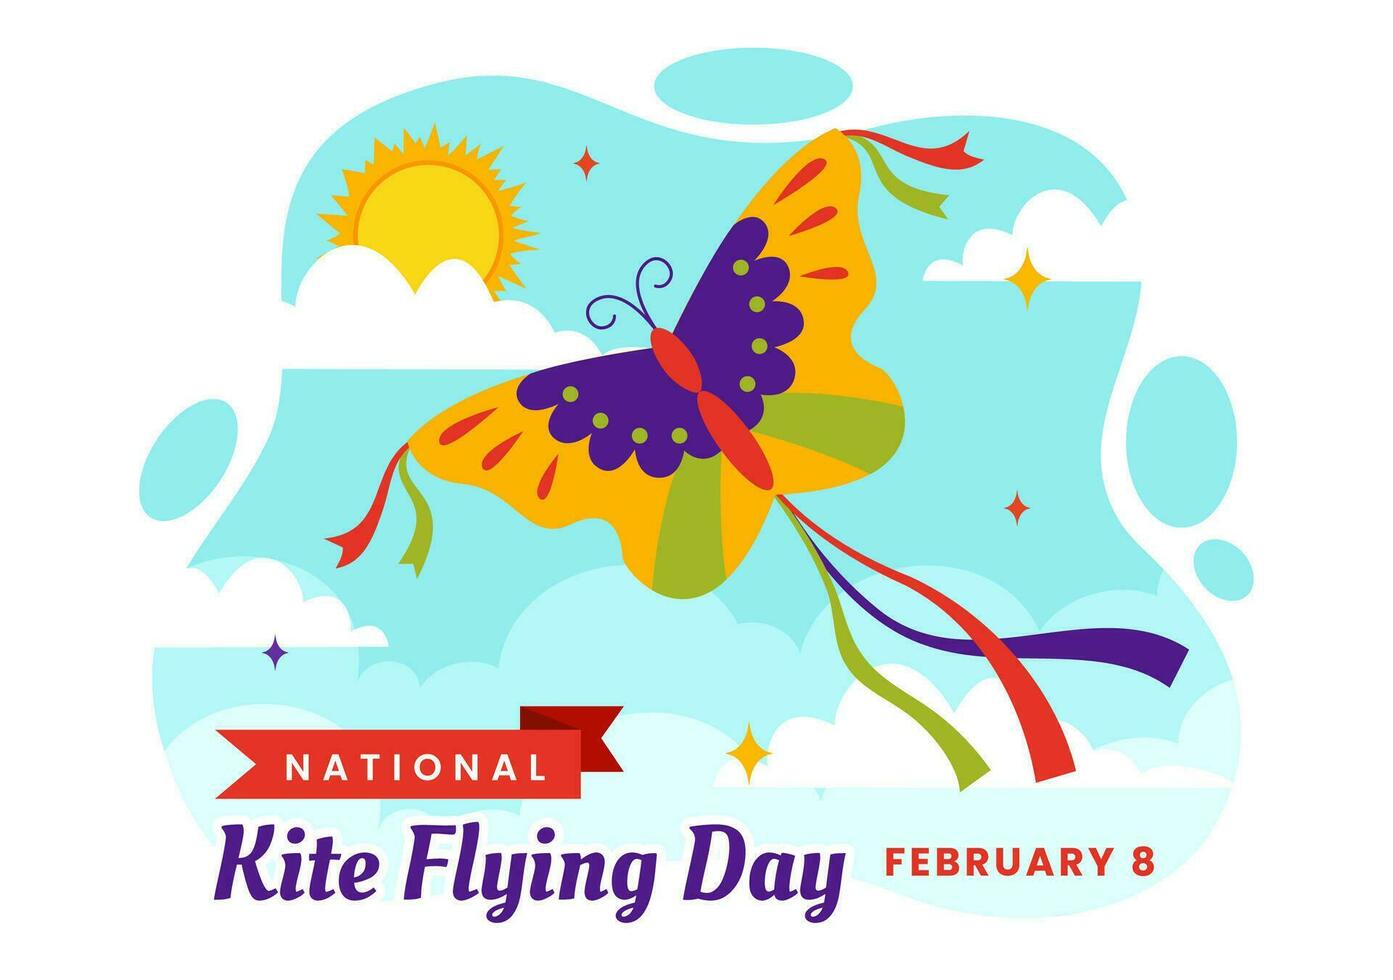 nazionale aquilone volante giorno vettore illustrazione su febbraio 8 di soleggiato cielo sfondo nel estate tempo libero attività nel piatto cartone animato sfondo design